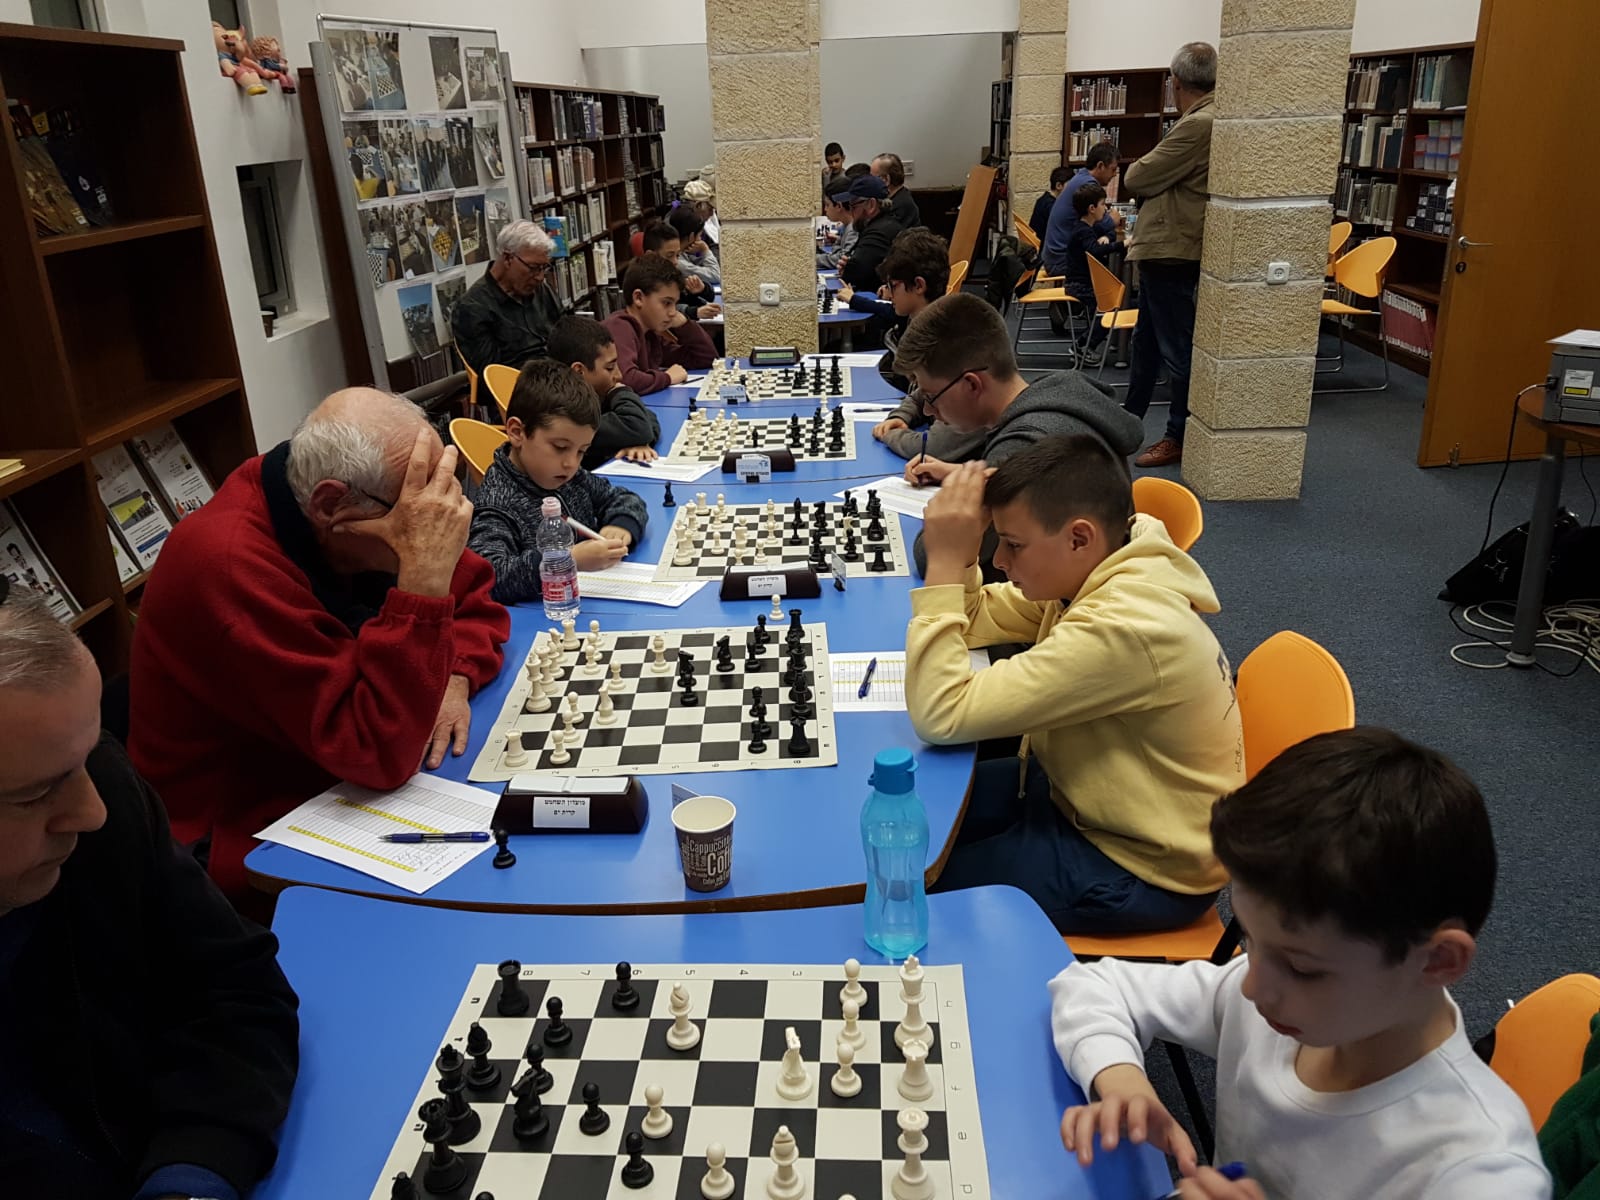 לראשונה בקריית ים יתקיים בעיר פסטיבל שחמט עירוני ואזורי בחסות איגוד השחמט